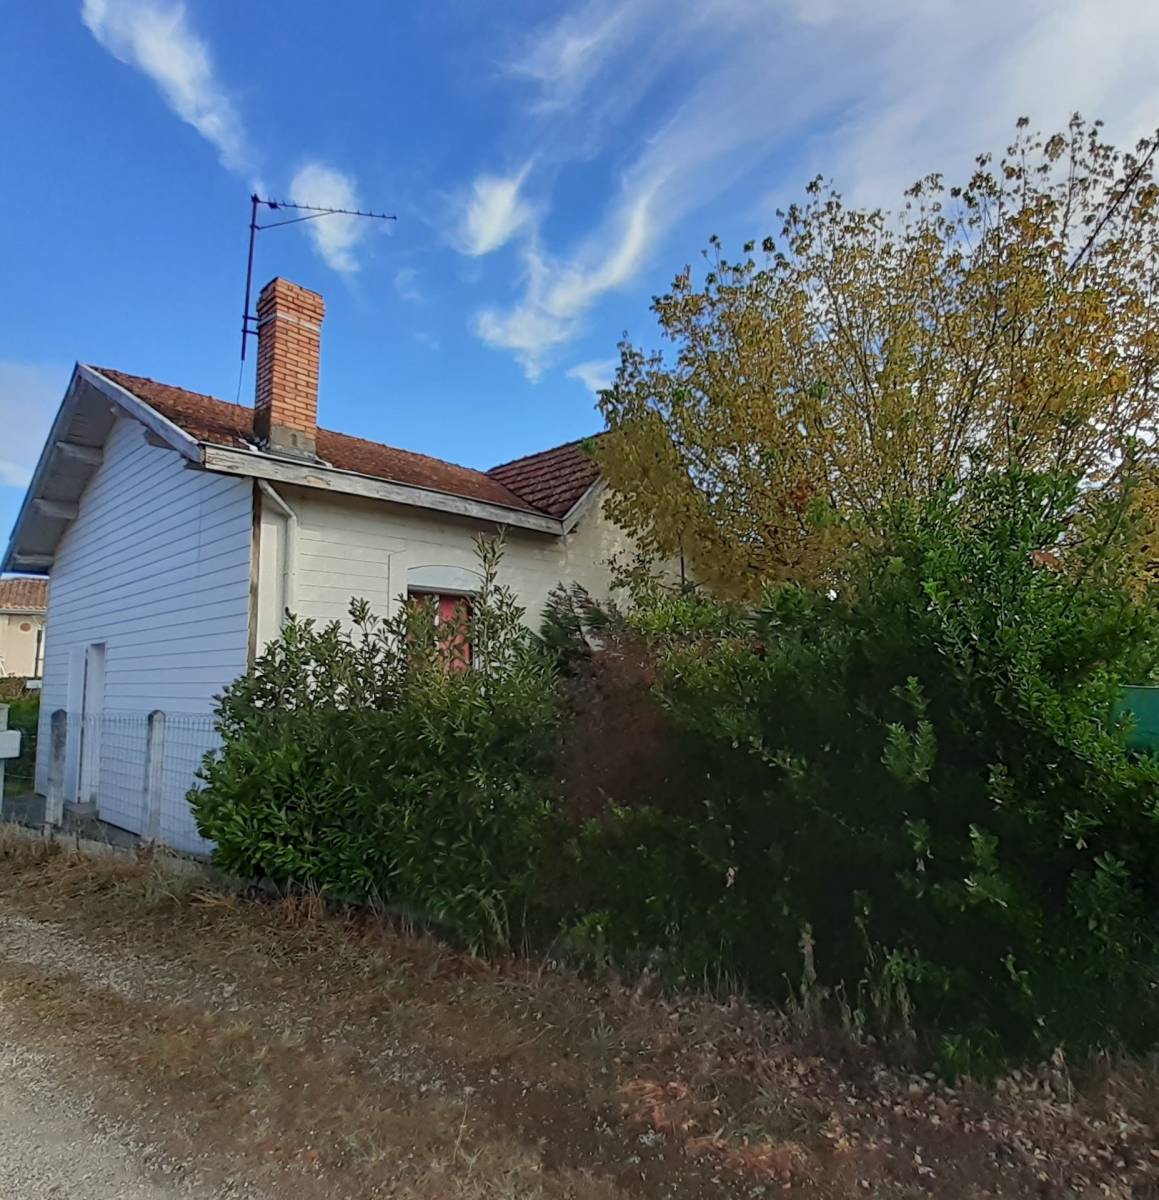 À vendre petite maison de 32 m² avec jardin à Saint Médard en Jalles quartier Corbiac